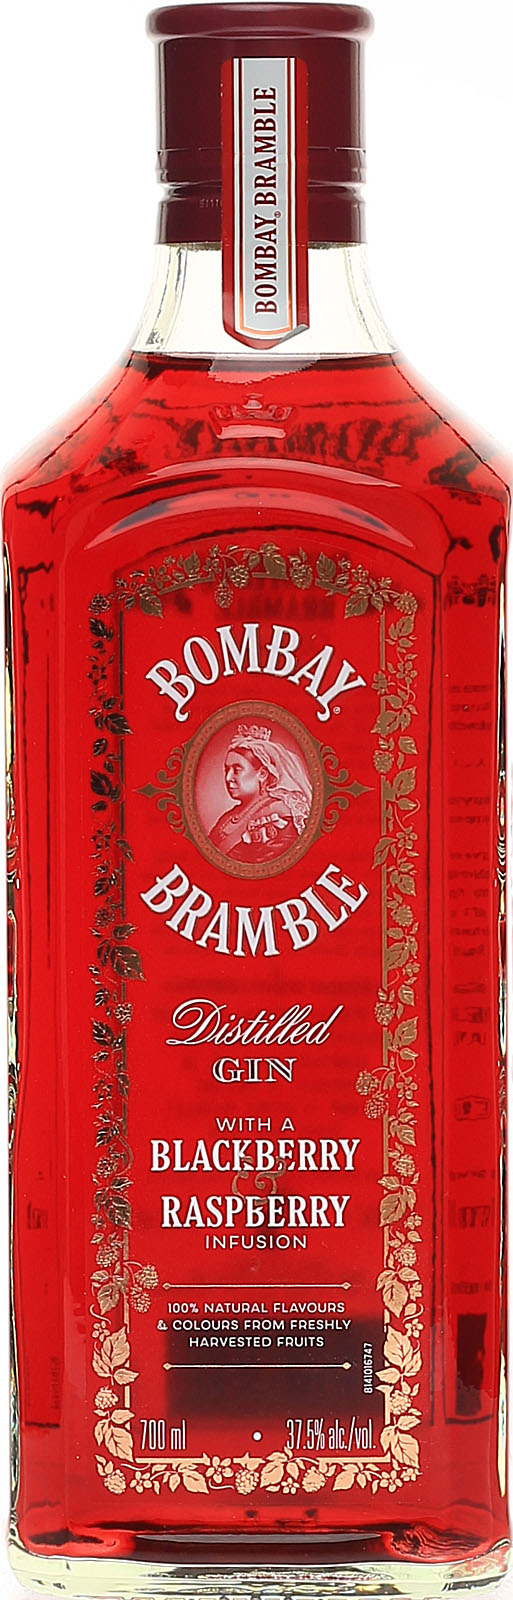 LED beleuchtet Leere Flasche Bombay Bramble Gin Für Sammler